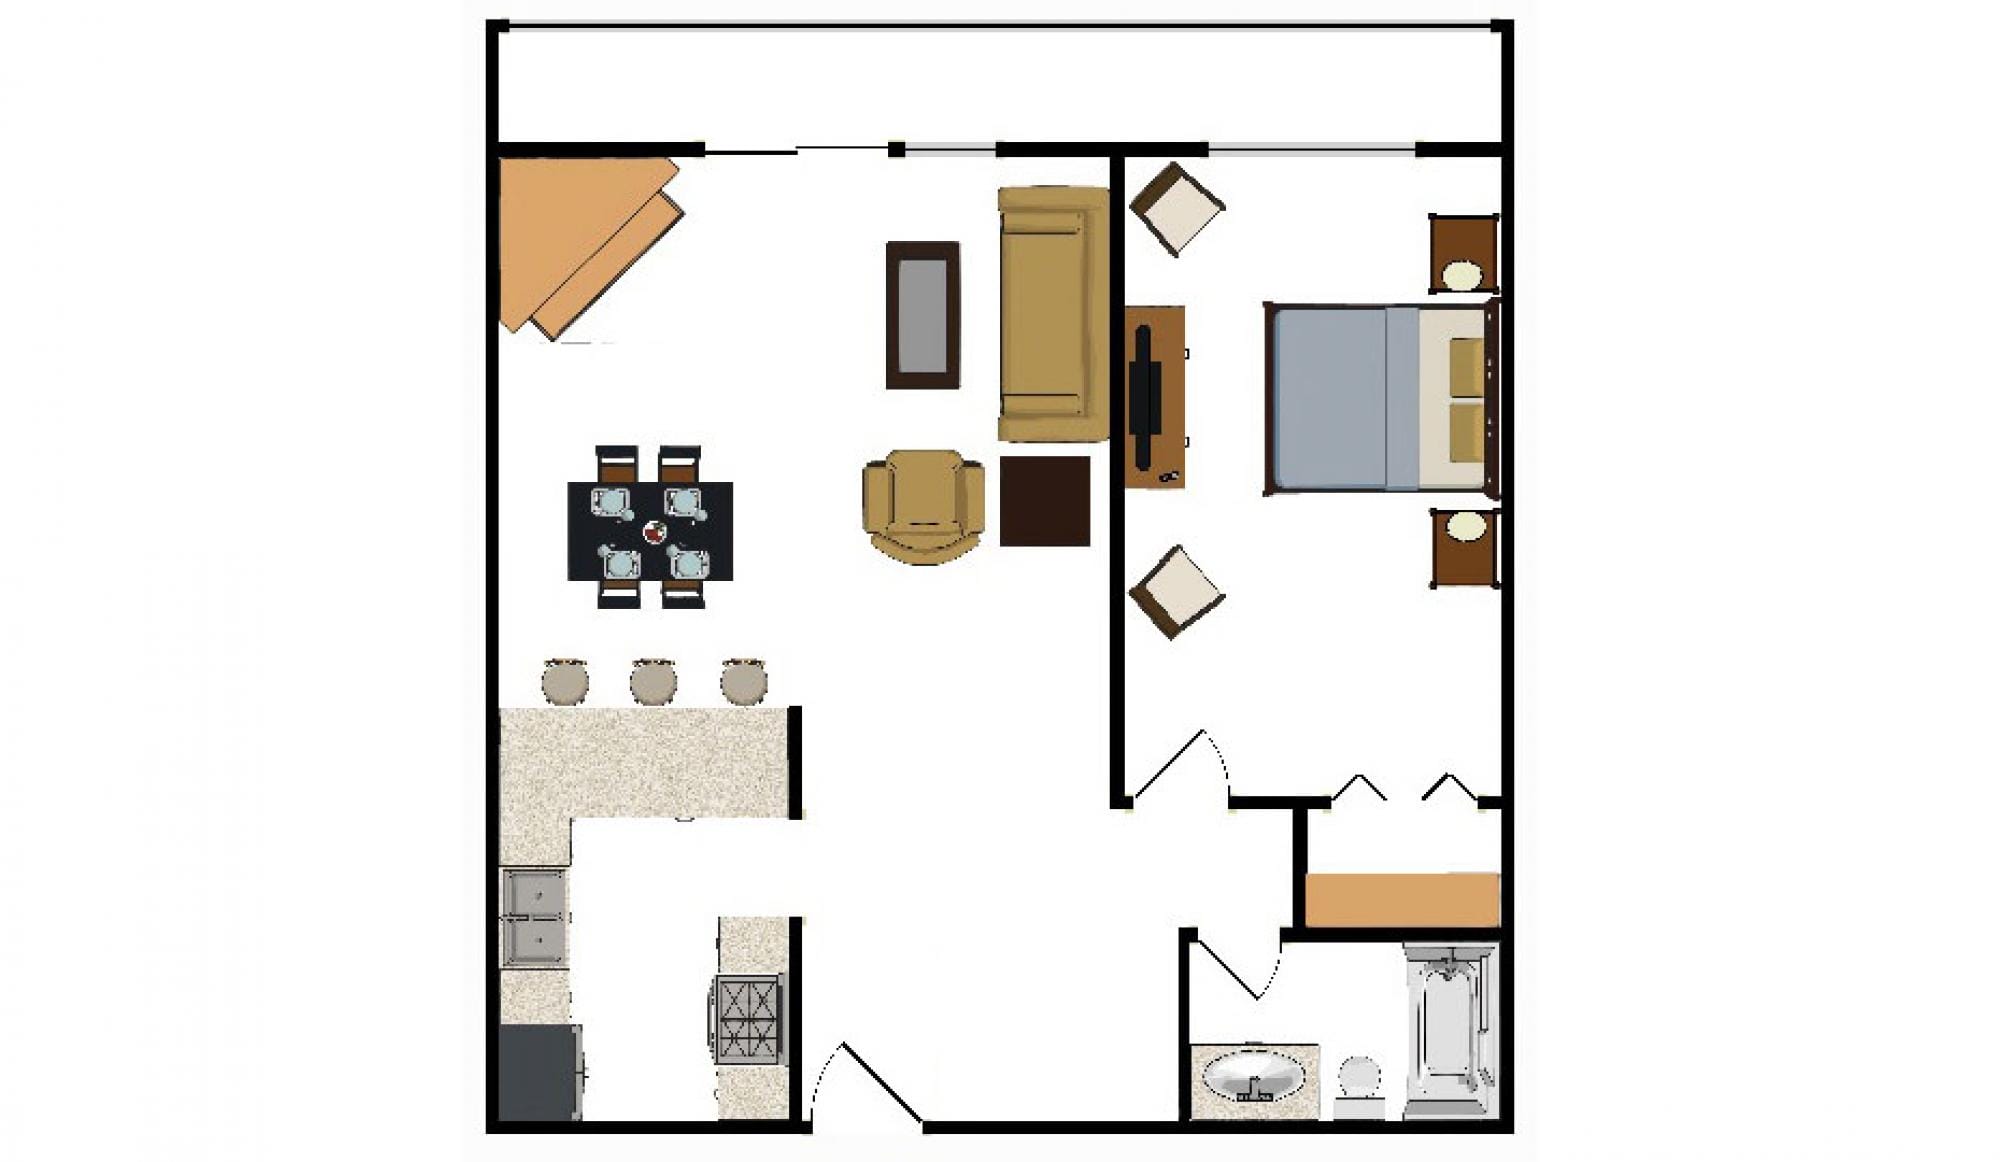 One-Bedroom-Suite